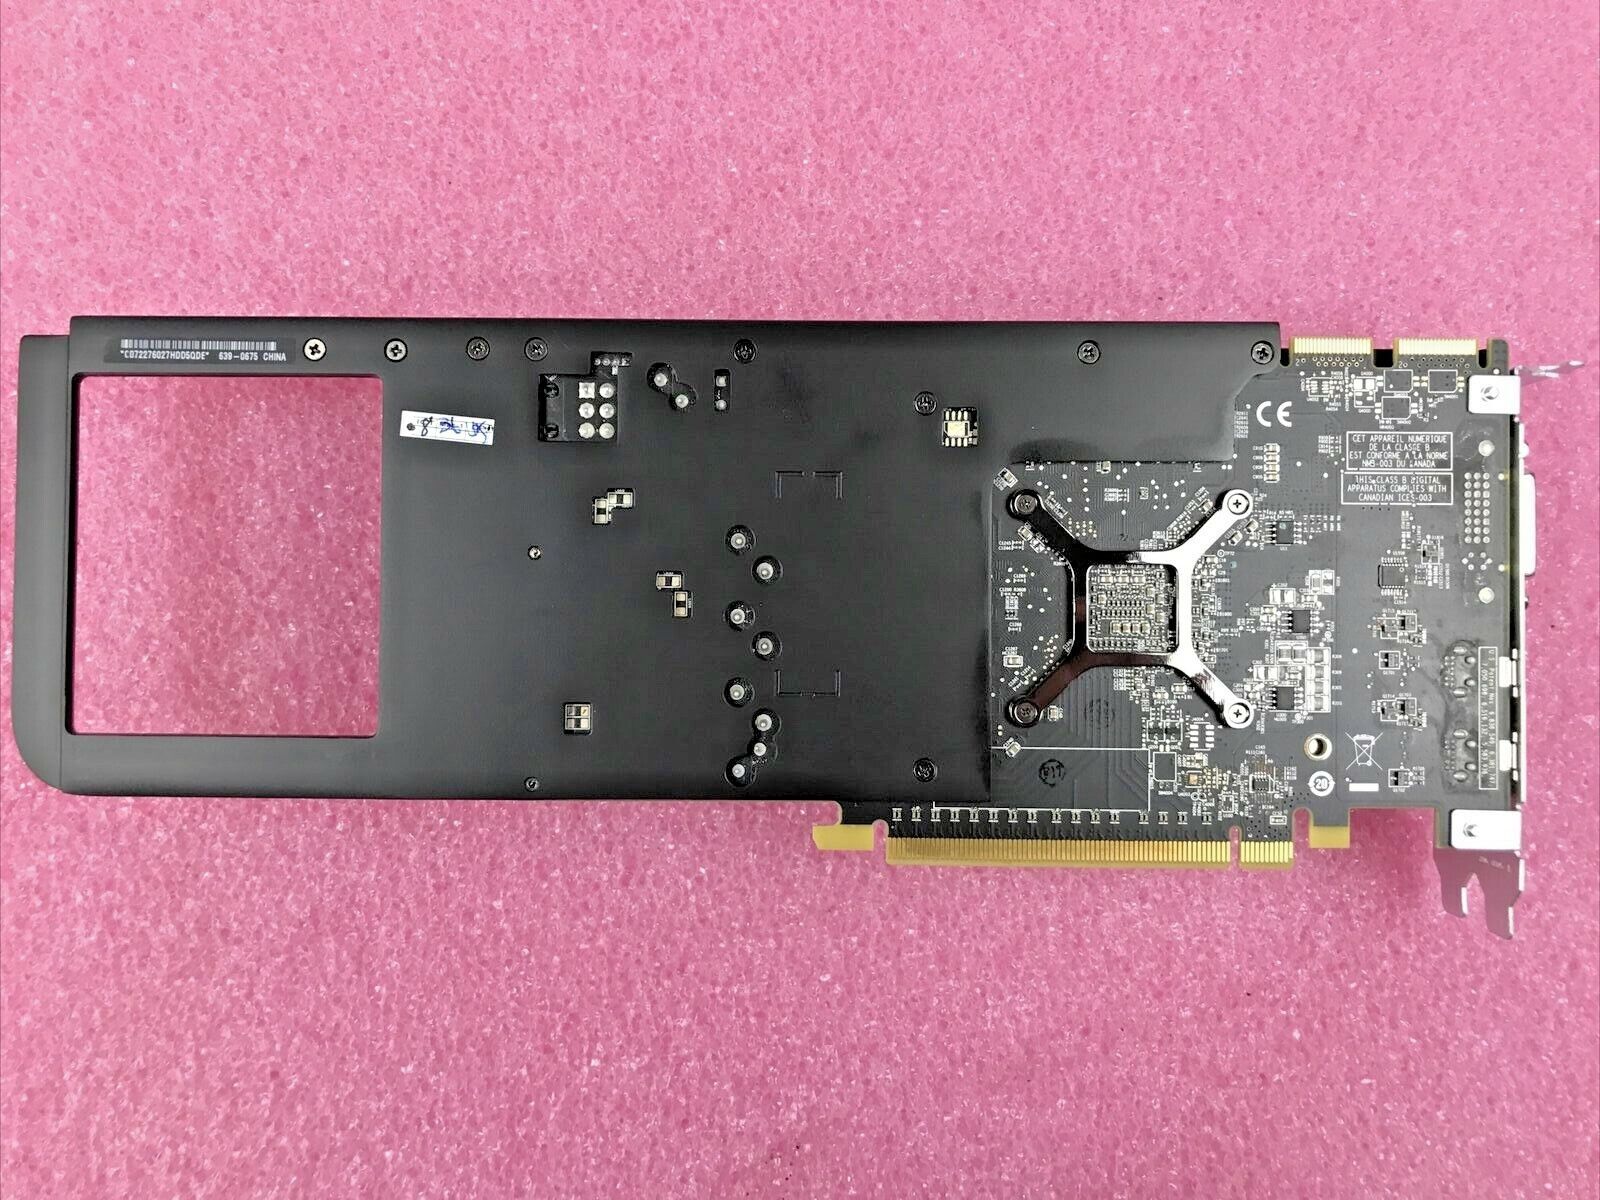 Apple ATI Radeon Genuine HD 5770 1GB Video Card